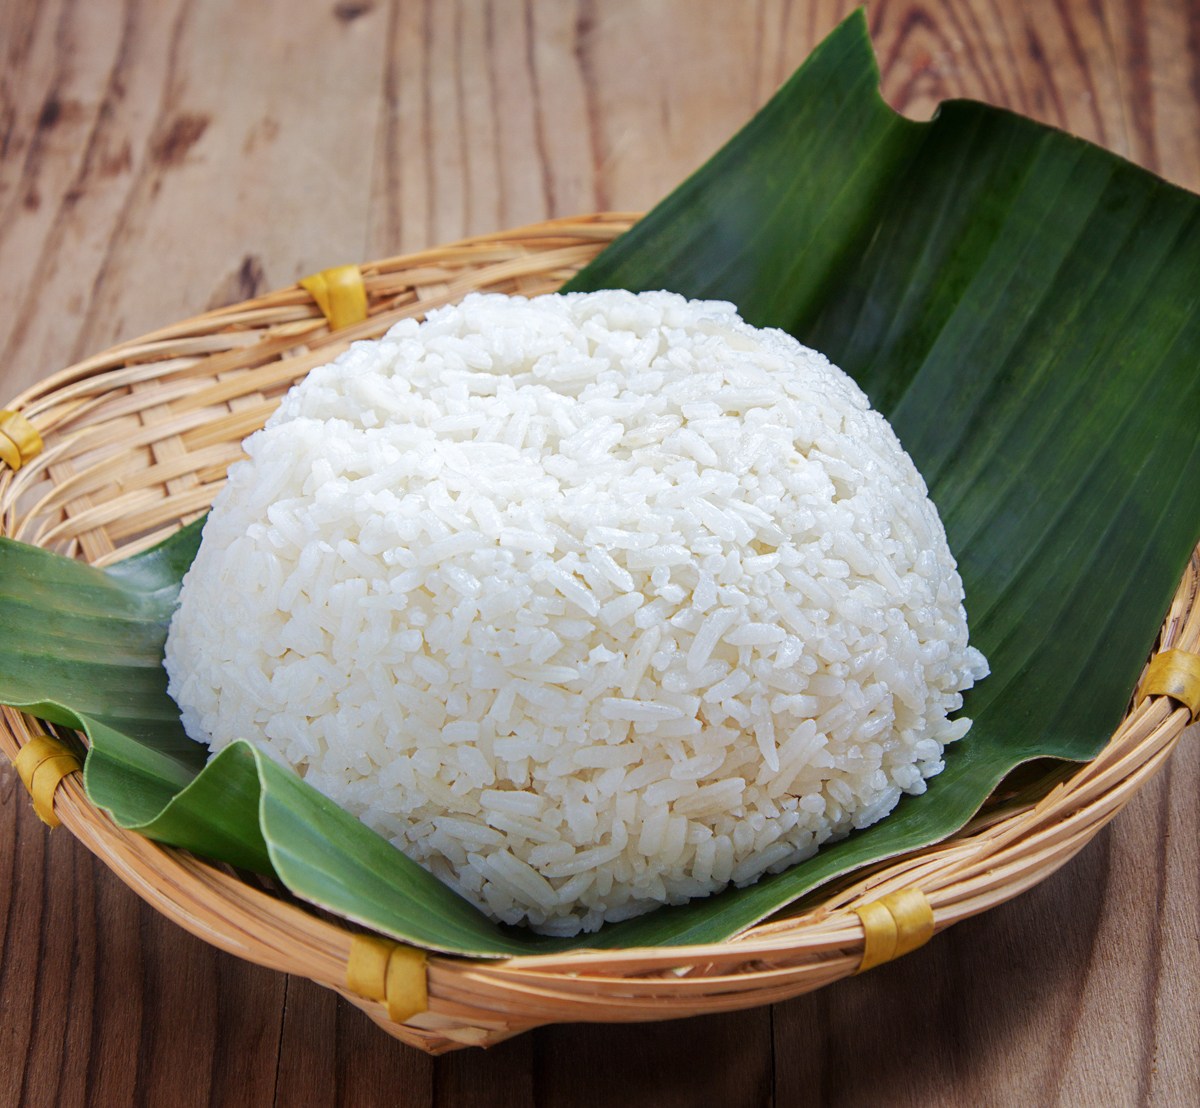 Cara Masak Nasi Putih Pakai Penanak Nasi